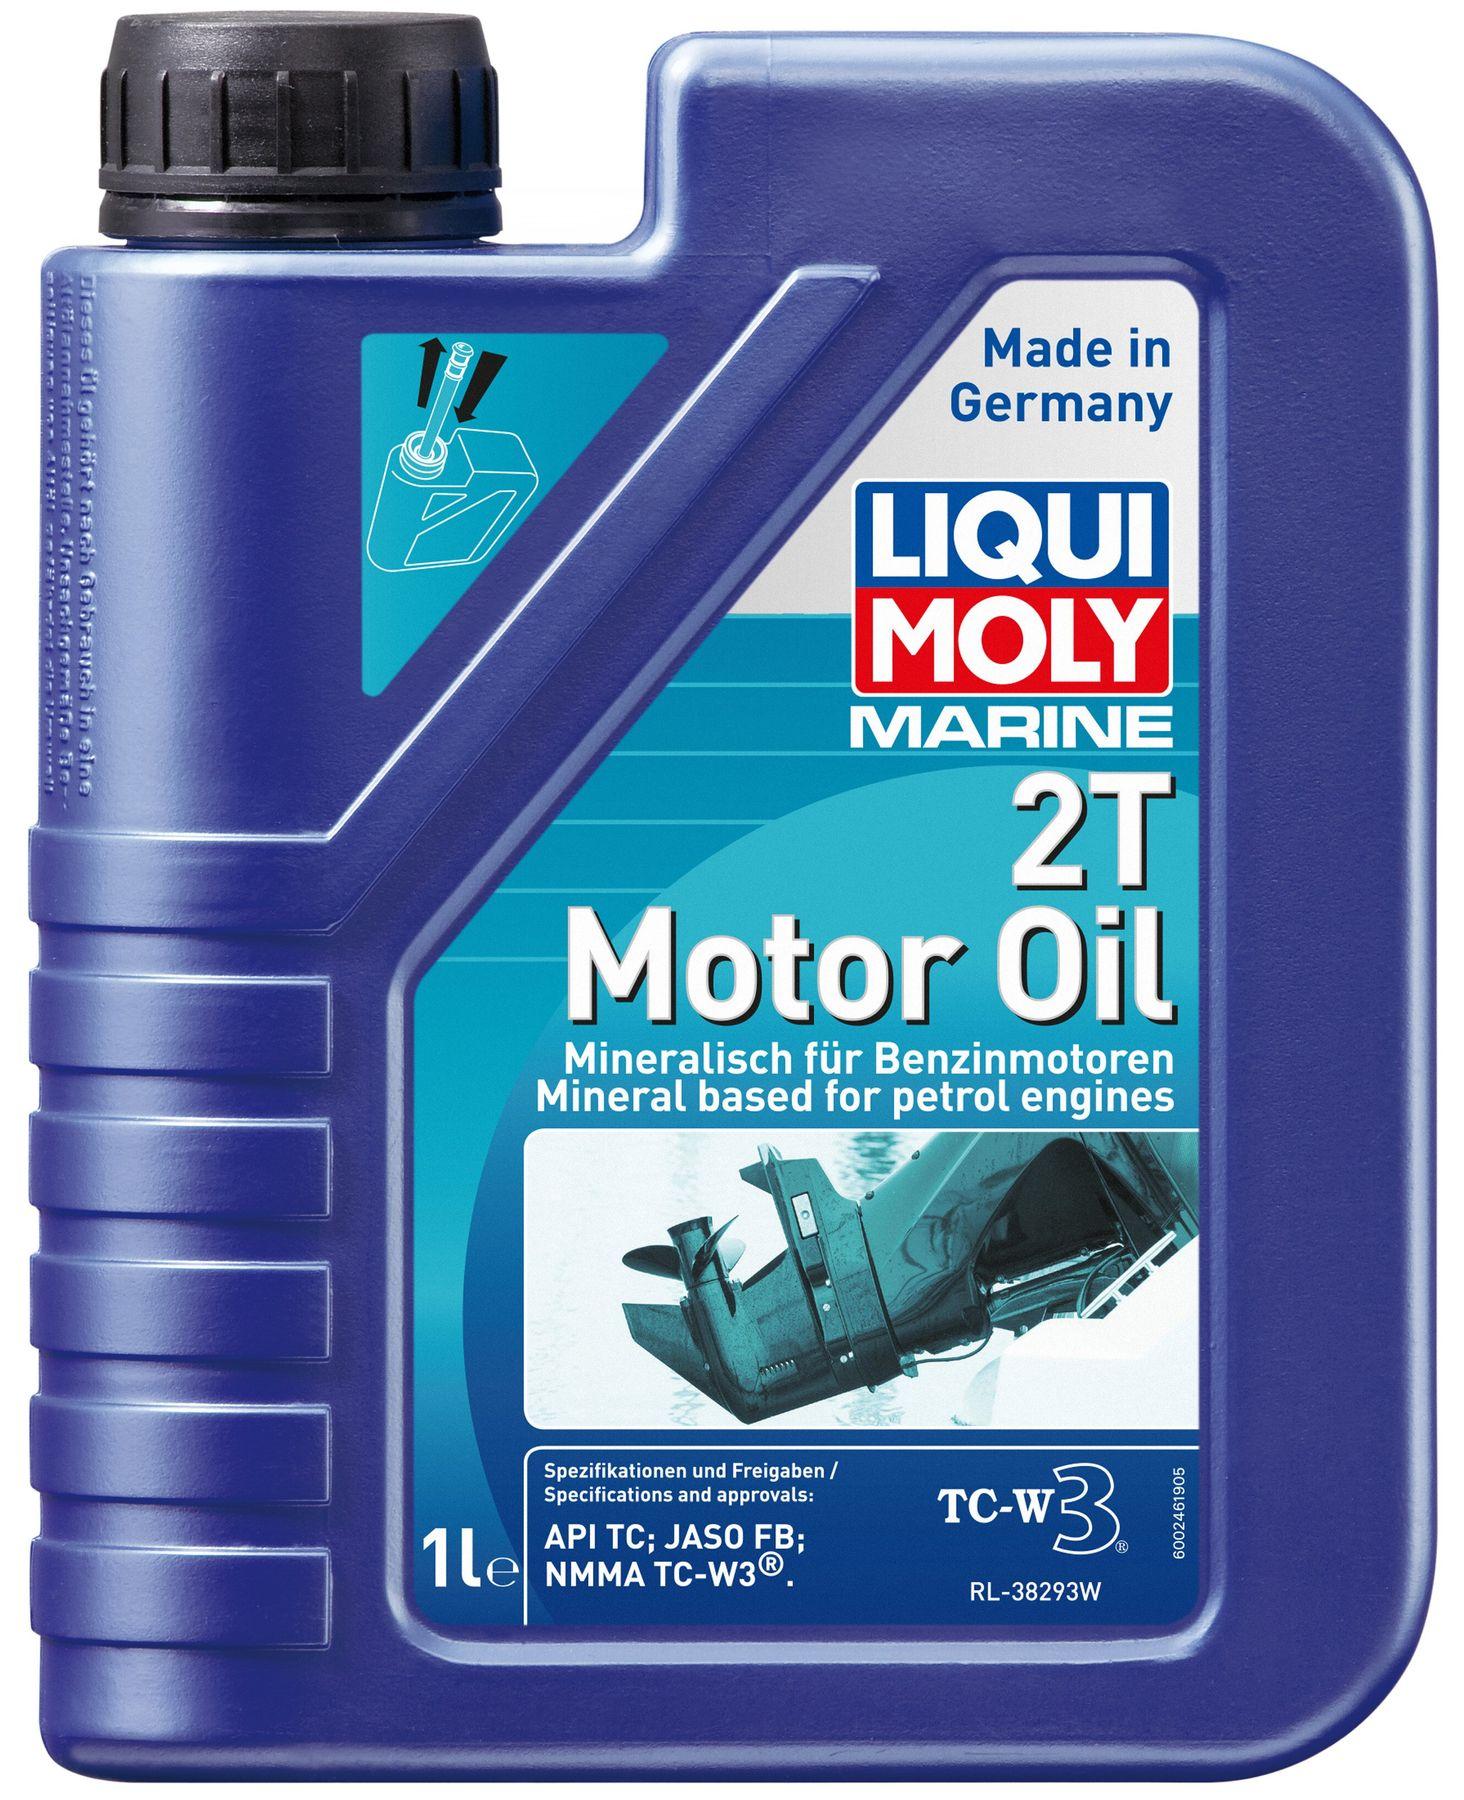 Моторное масло Liqui Moly Marine 2T Mineral, 1 литр (25019)